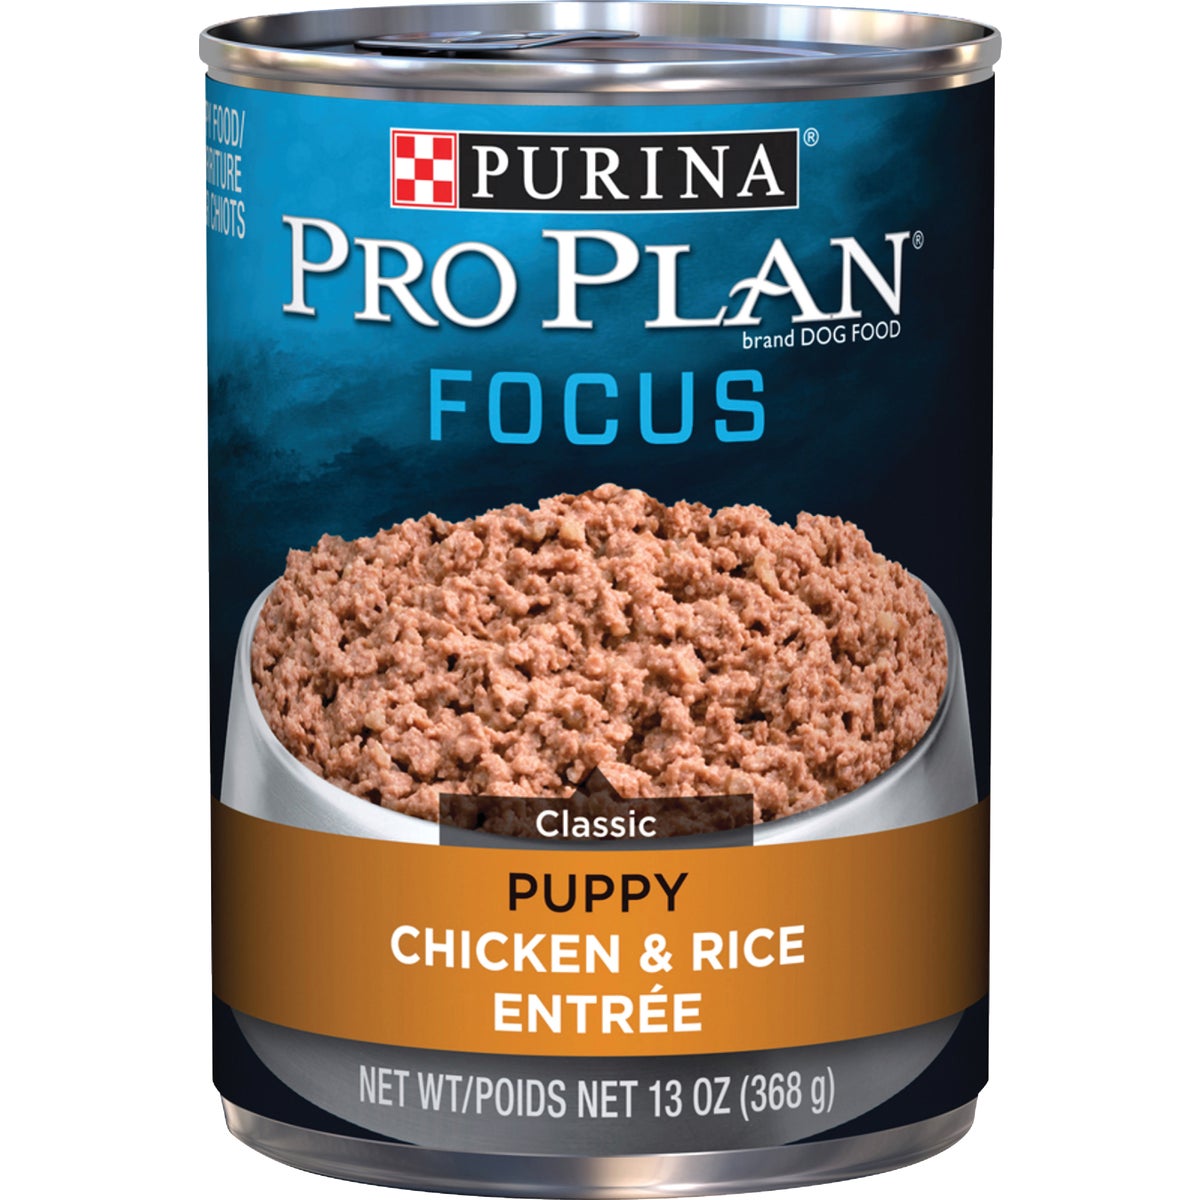 Purina Pro Plan Focus Chicken & Rice Wet Puppy Food, 13 Oz.